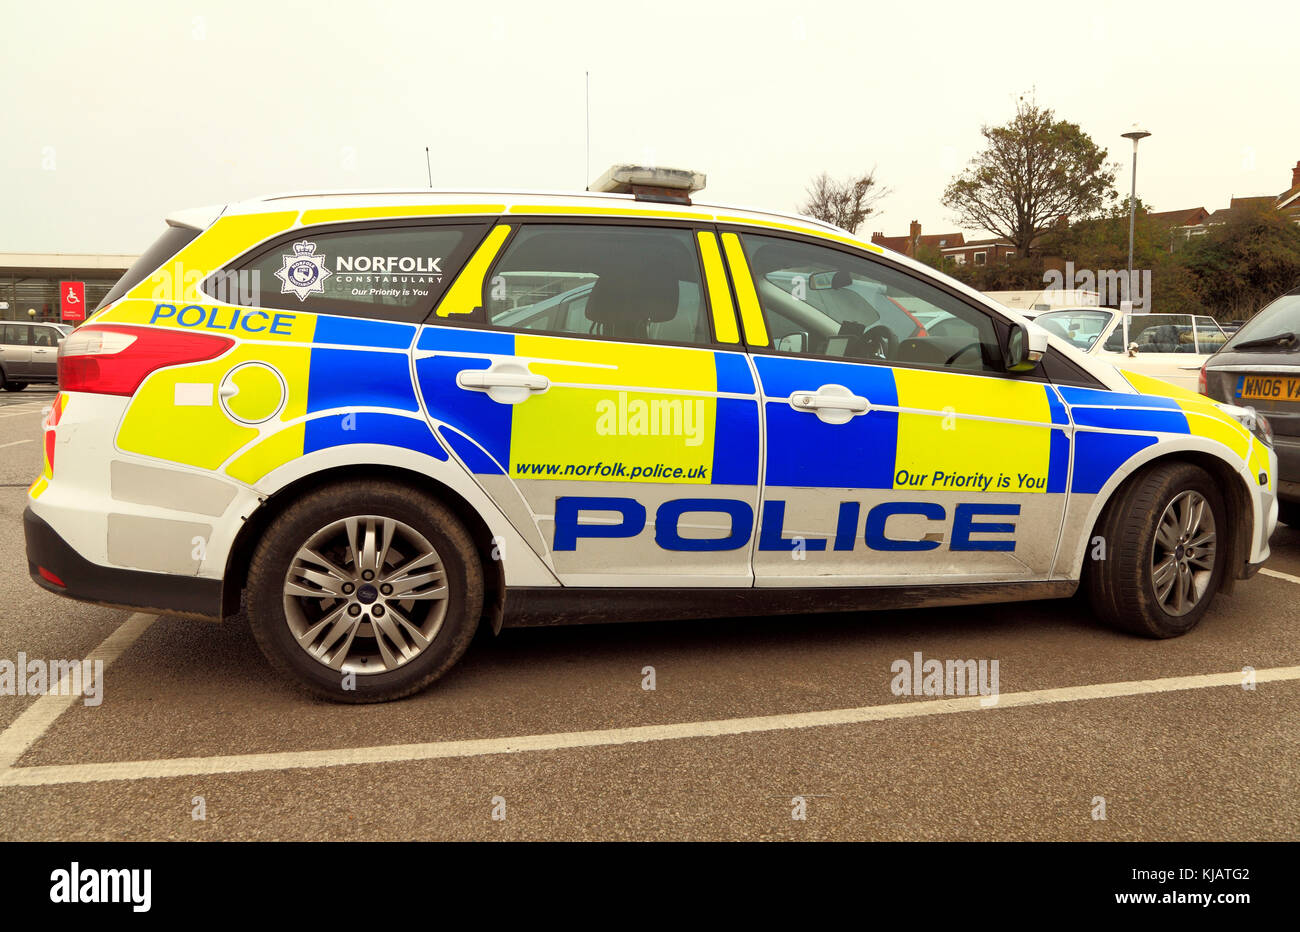 La police de Norfolk, voiture, véhicule, constabulary, police, forces armées, véhicules, voitures, logo Banque D'Images